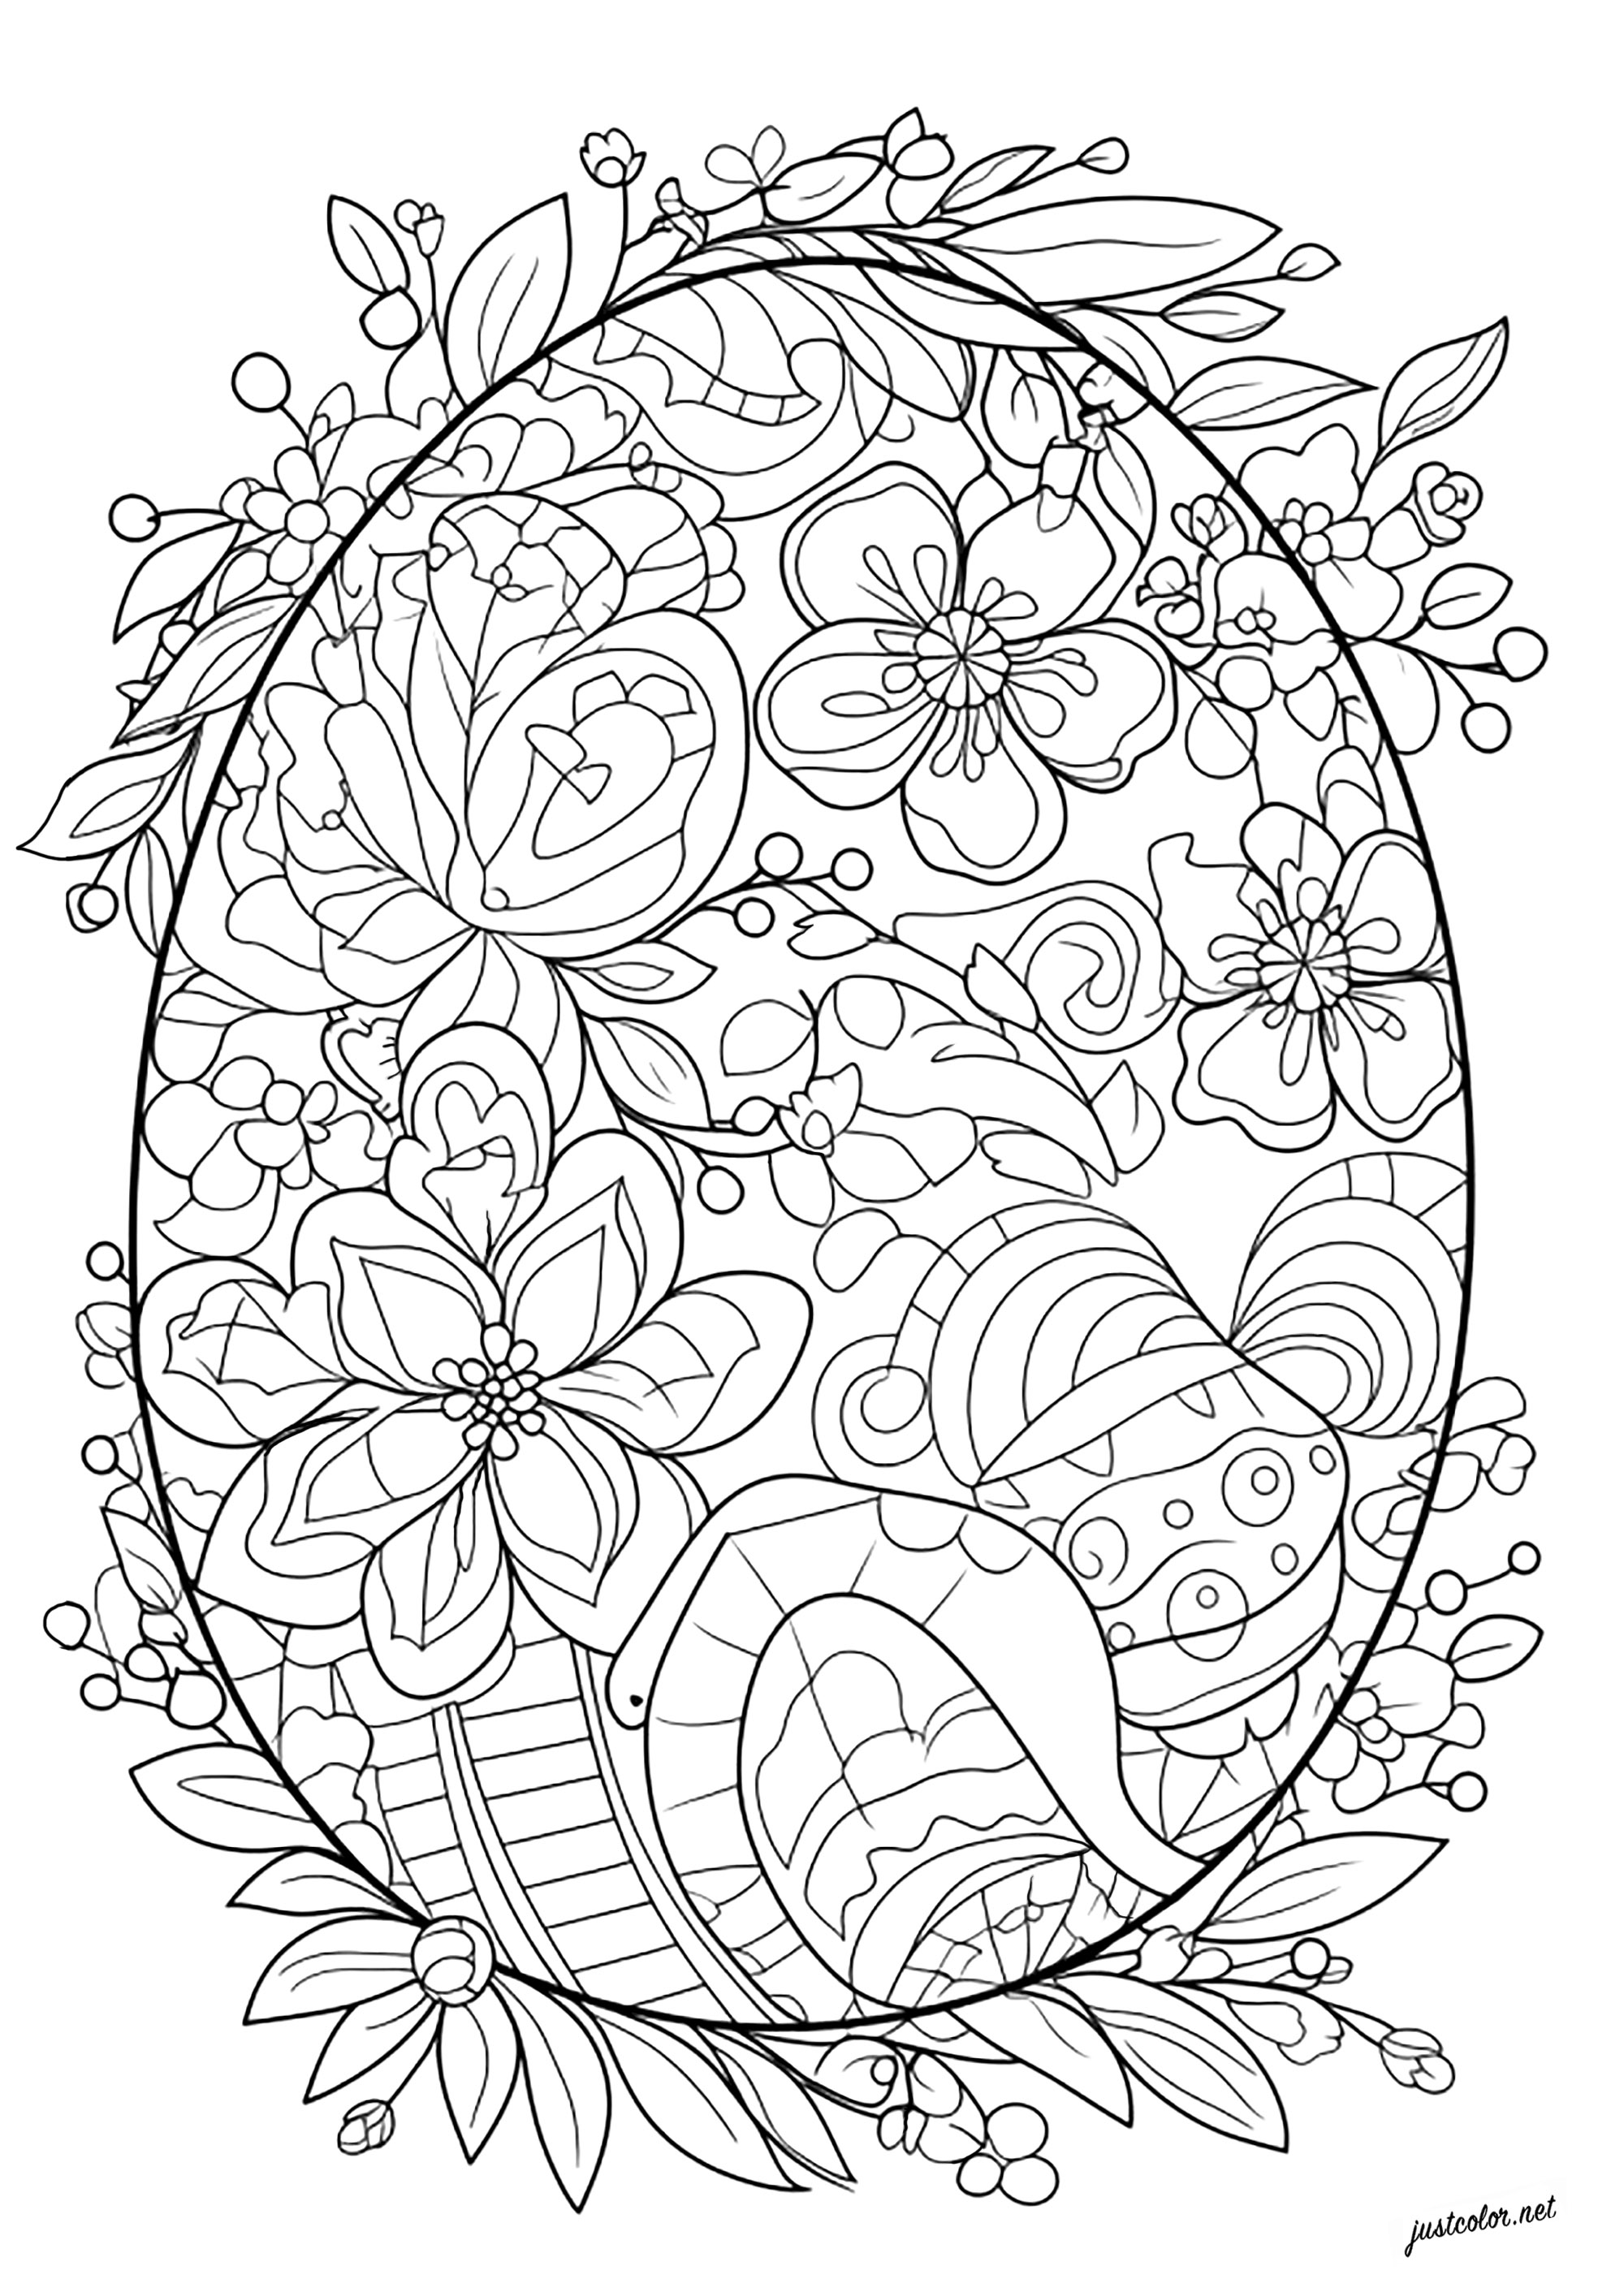 Uovo di Pasqua da colorare. Molti fiori e foglie da colorare in questo bellissimo uovo di Pasqua.